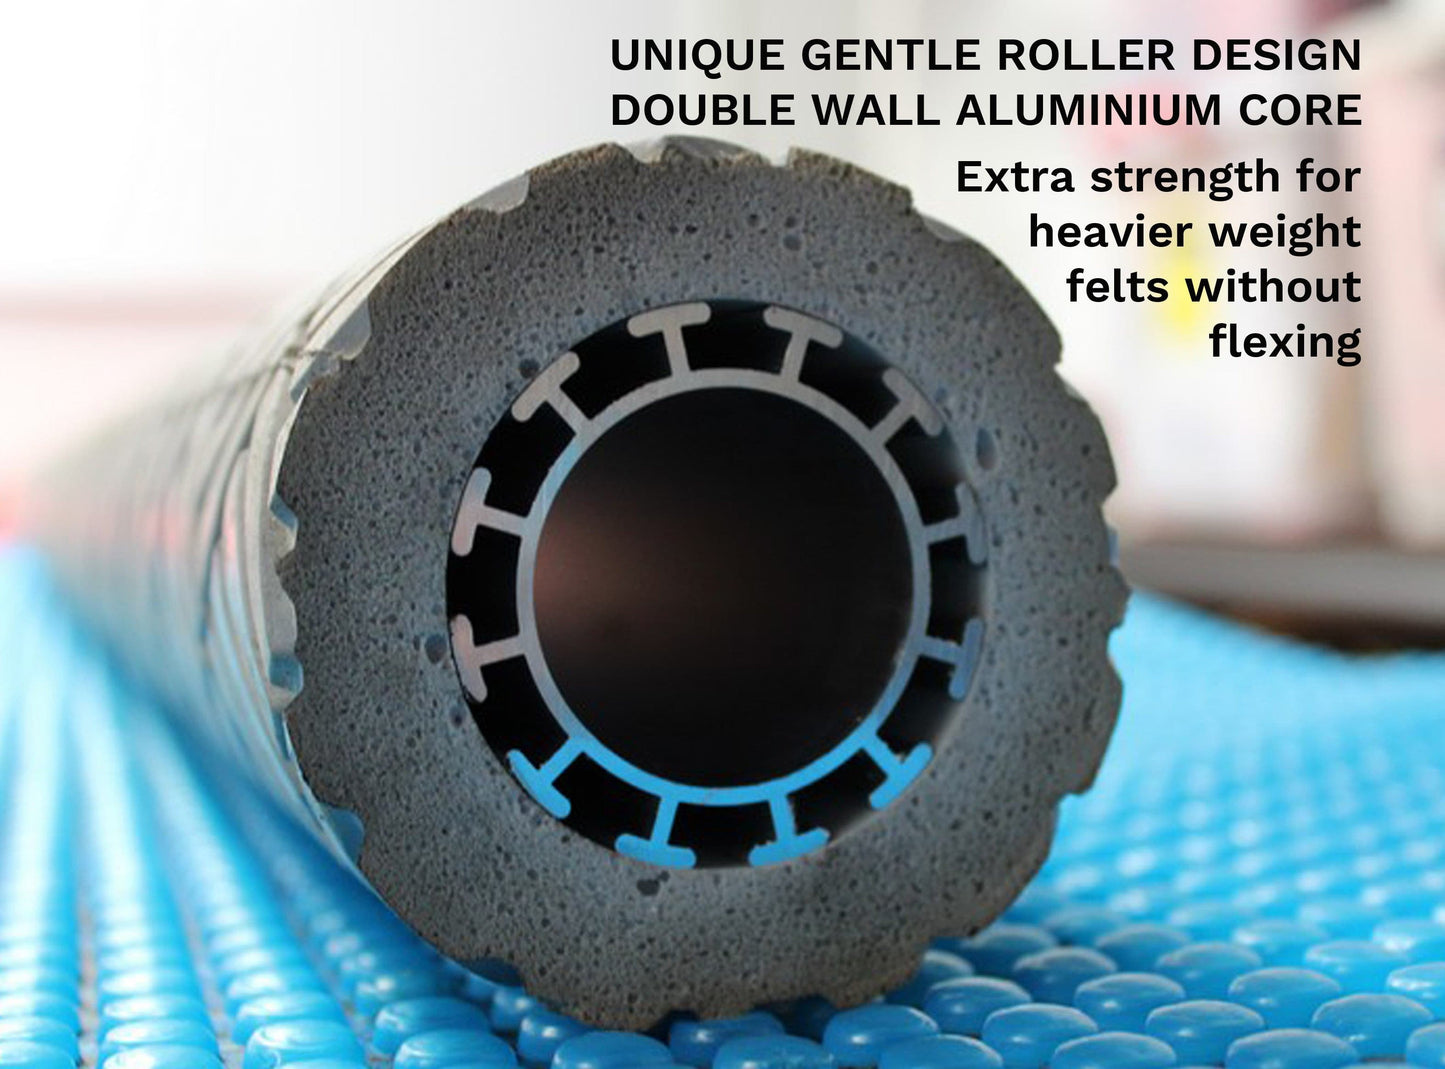 Gentle Roller wet felt rolling machine drive roller